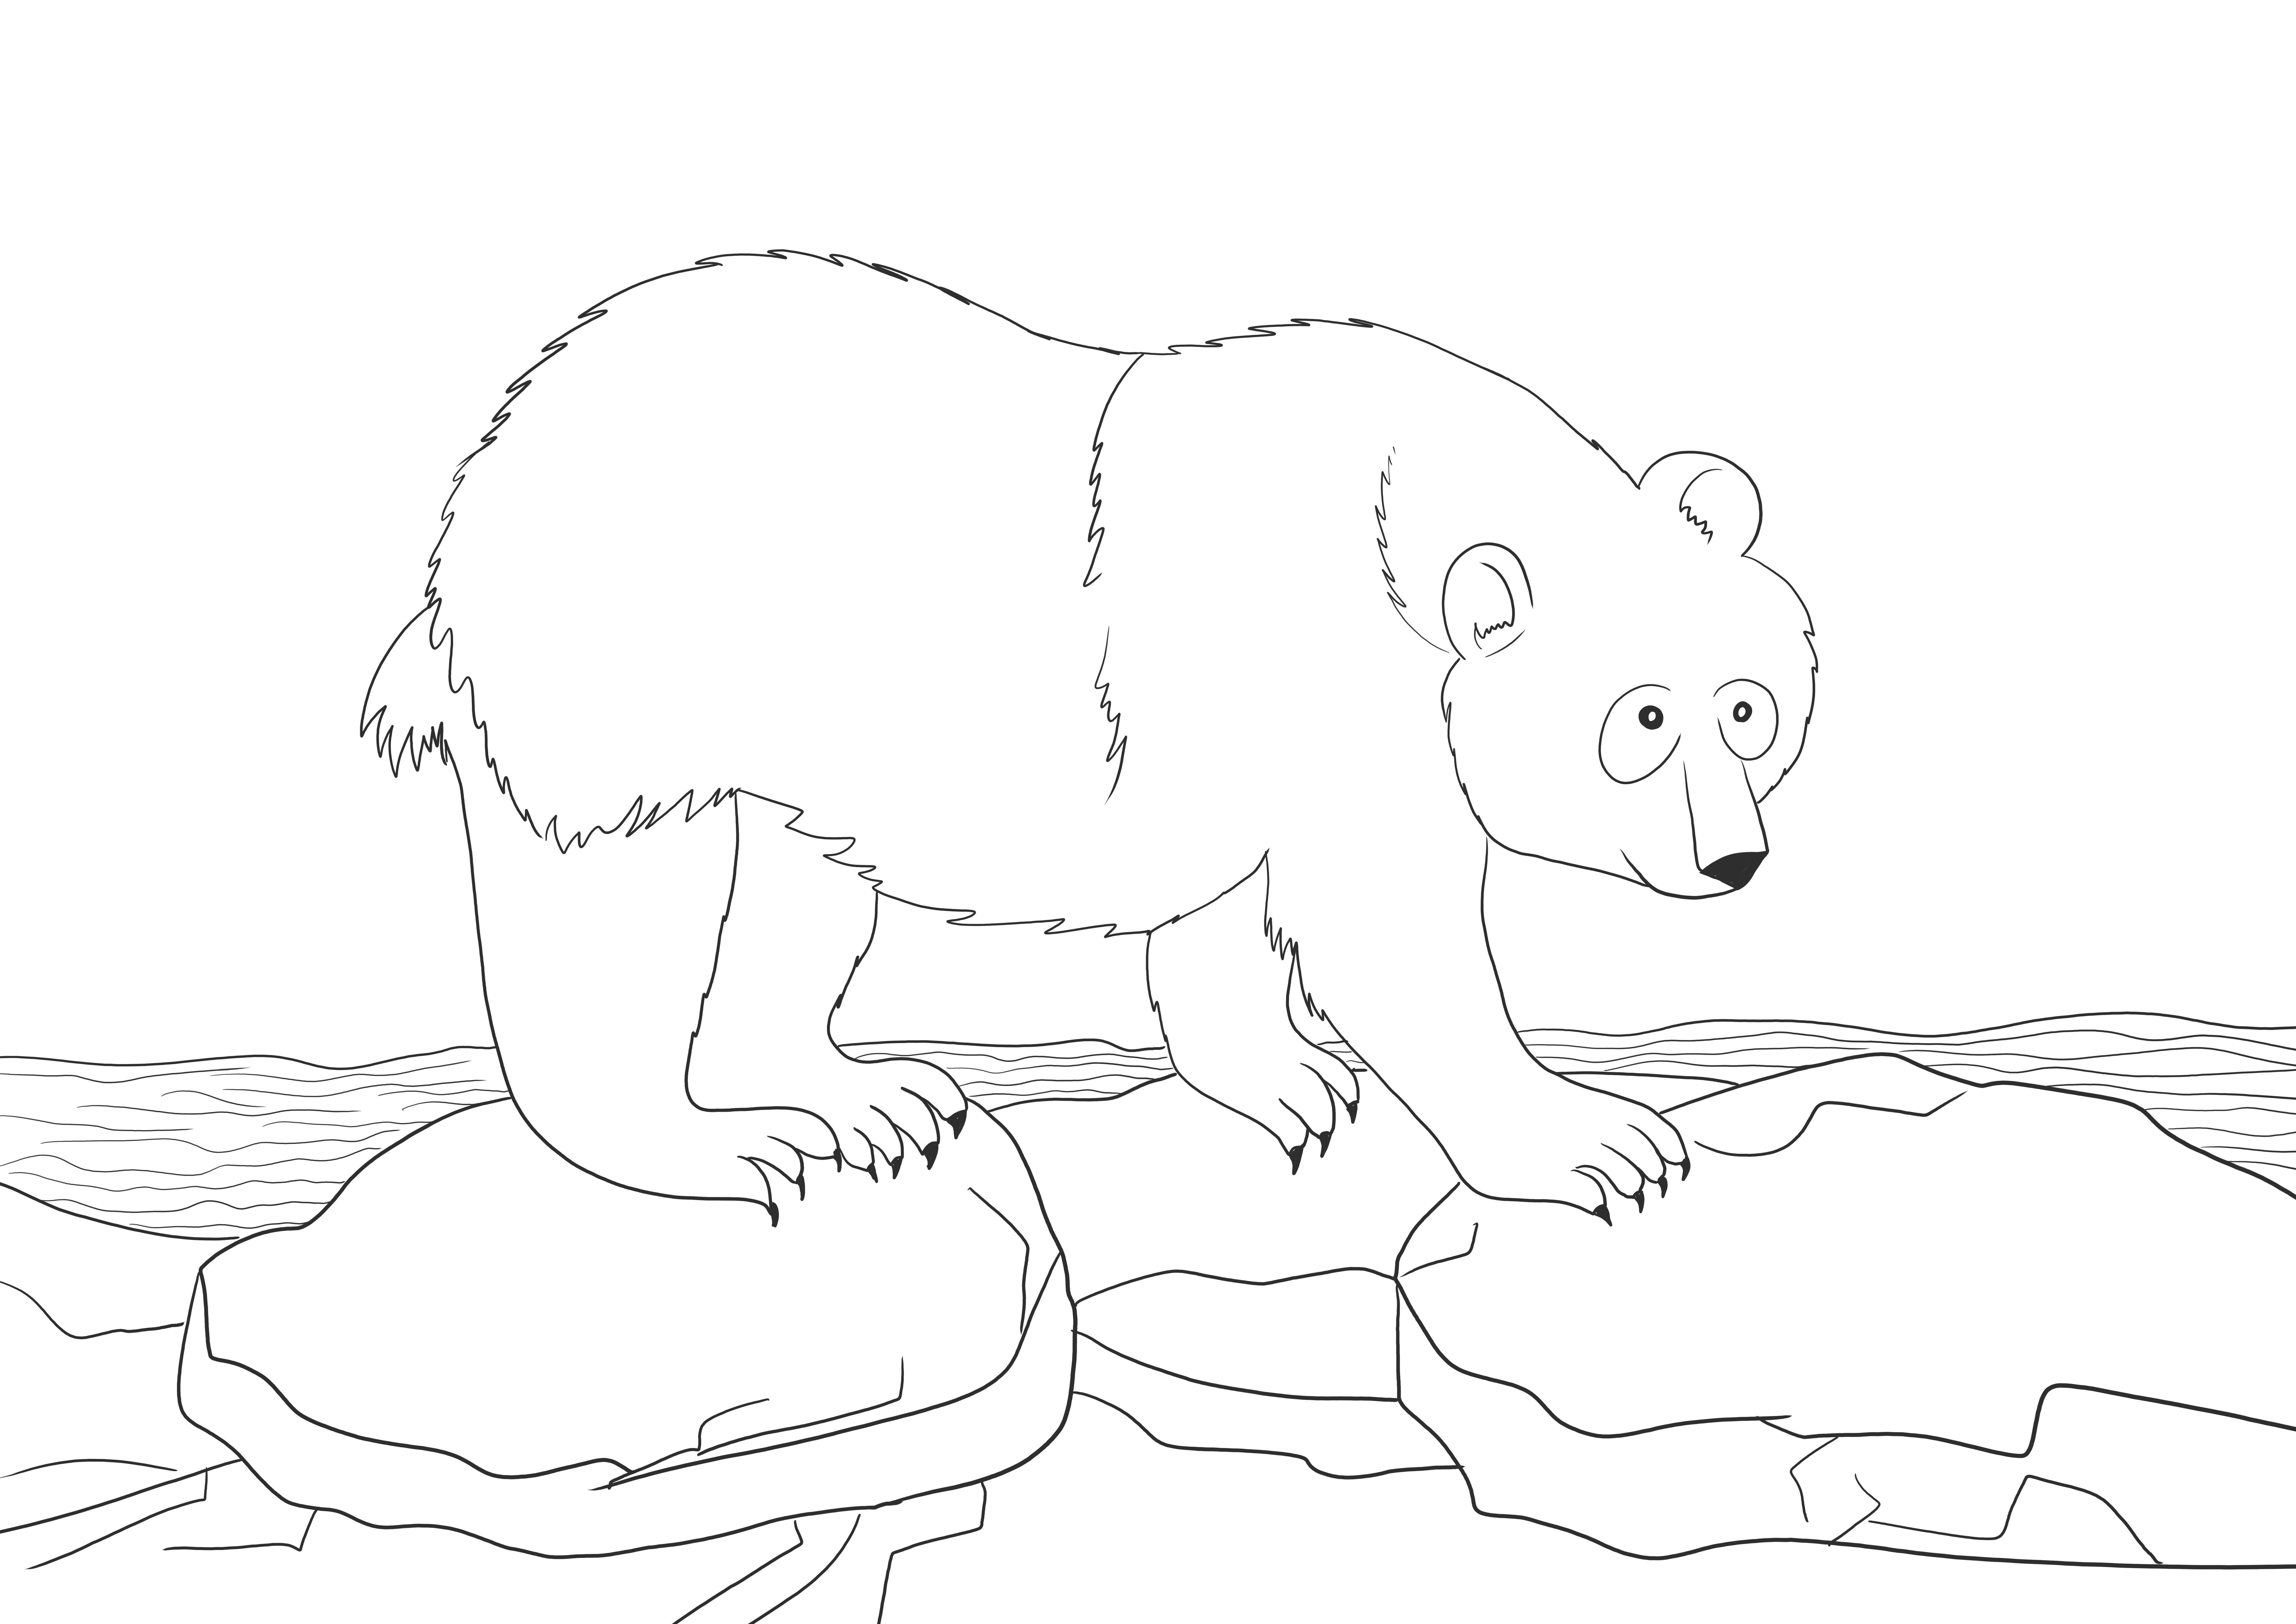 Kutup ayısı, buzsuz yazdırılabilir sayfa üzerinde renklendirmek için kayar